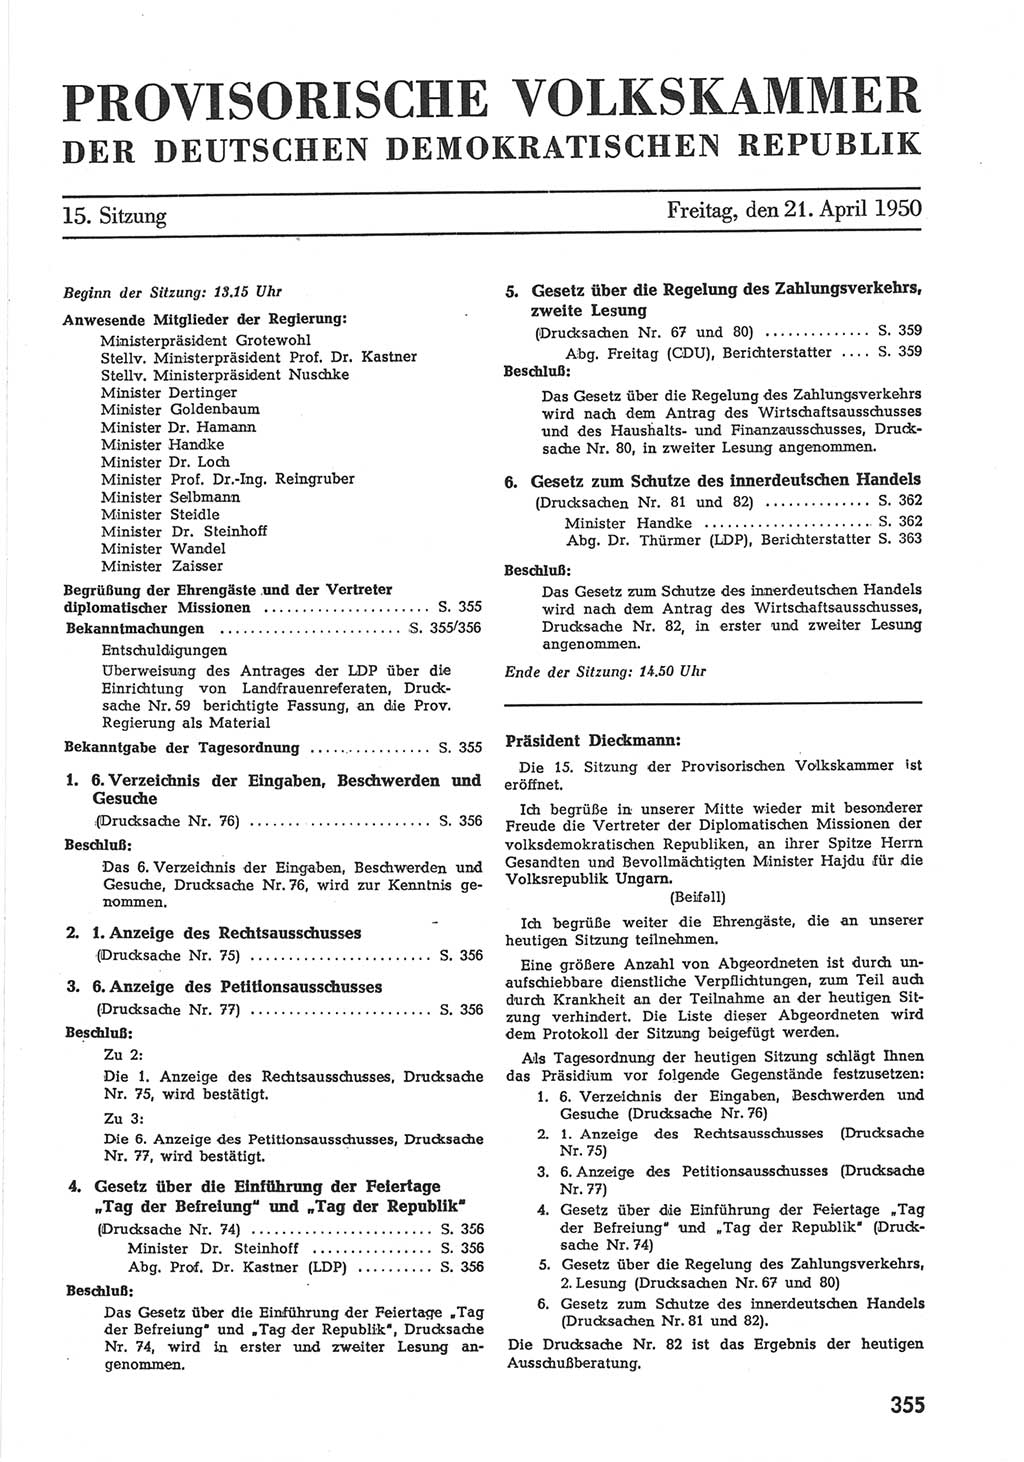 Provisorische Volkskammer (VK) der Deutschen Demokratischen Republik (DDR) 1949-1950, Dokument 371 (Prov. VK DDR 1949-1950, Dok. 371)